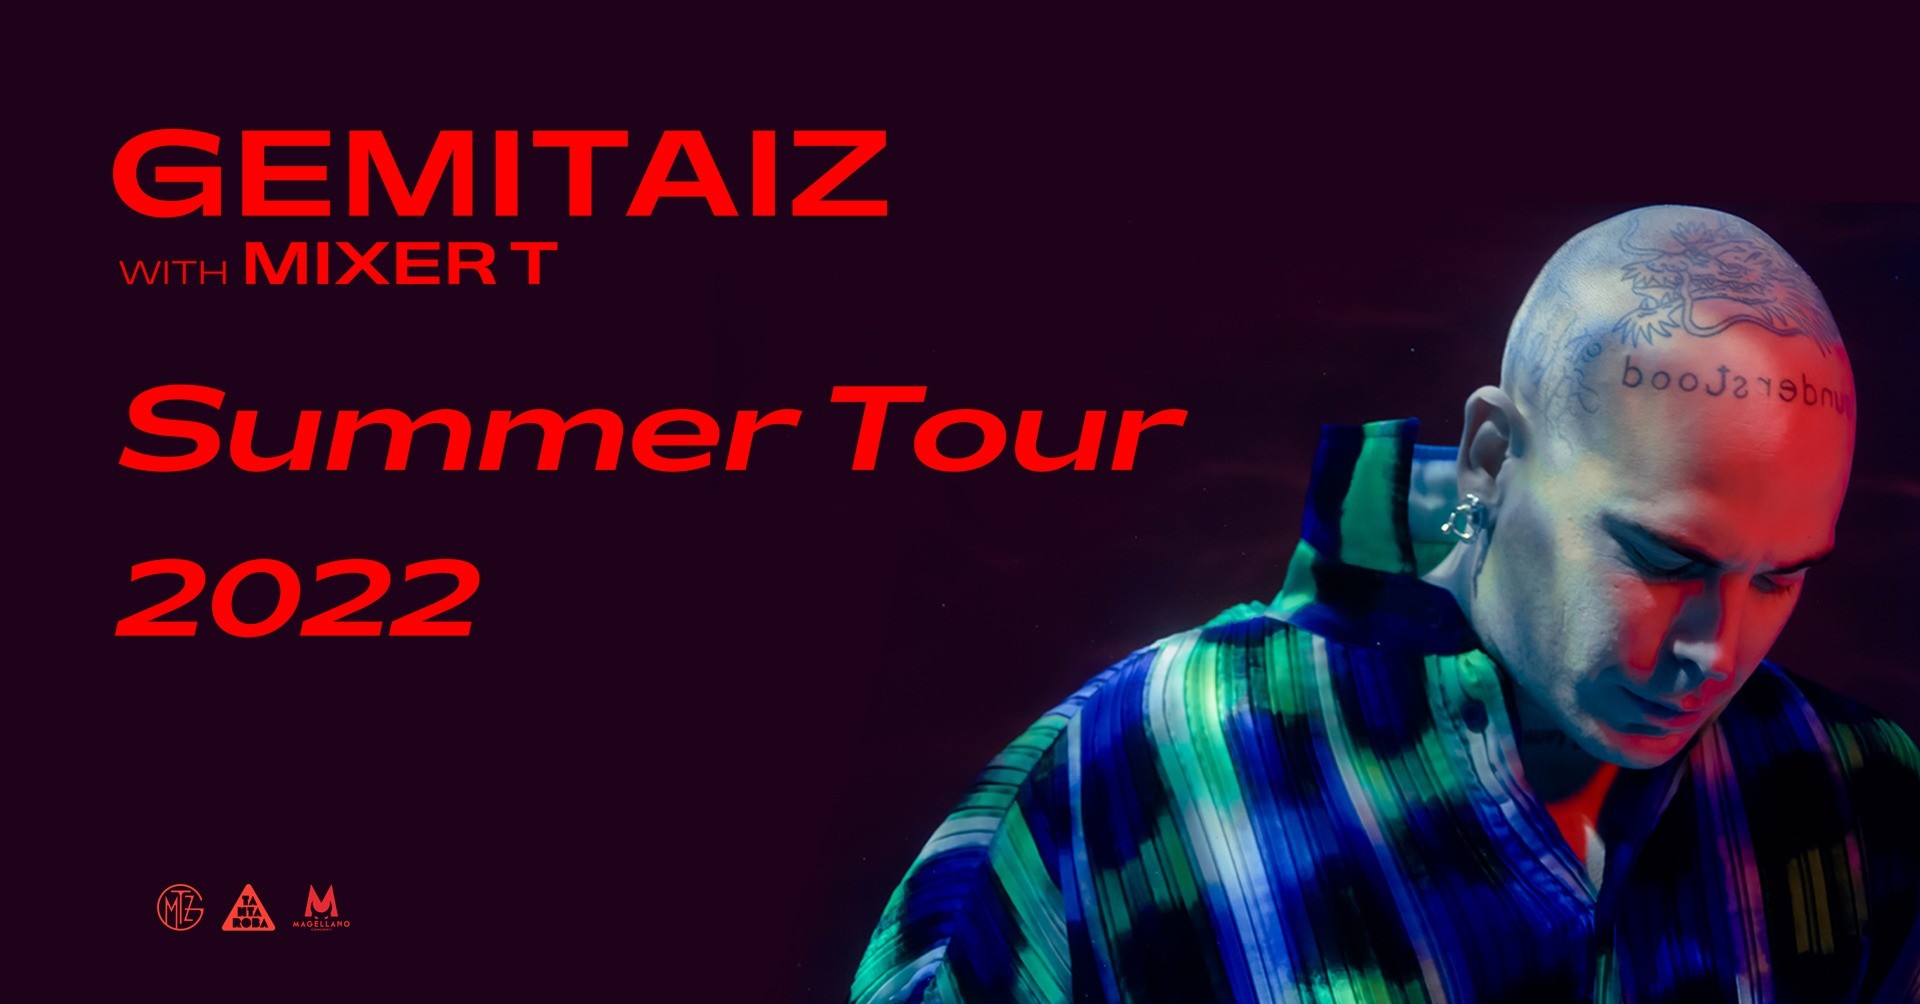 image GEMITAIZ with MIXER T - SUMMER TOUR 2022